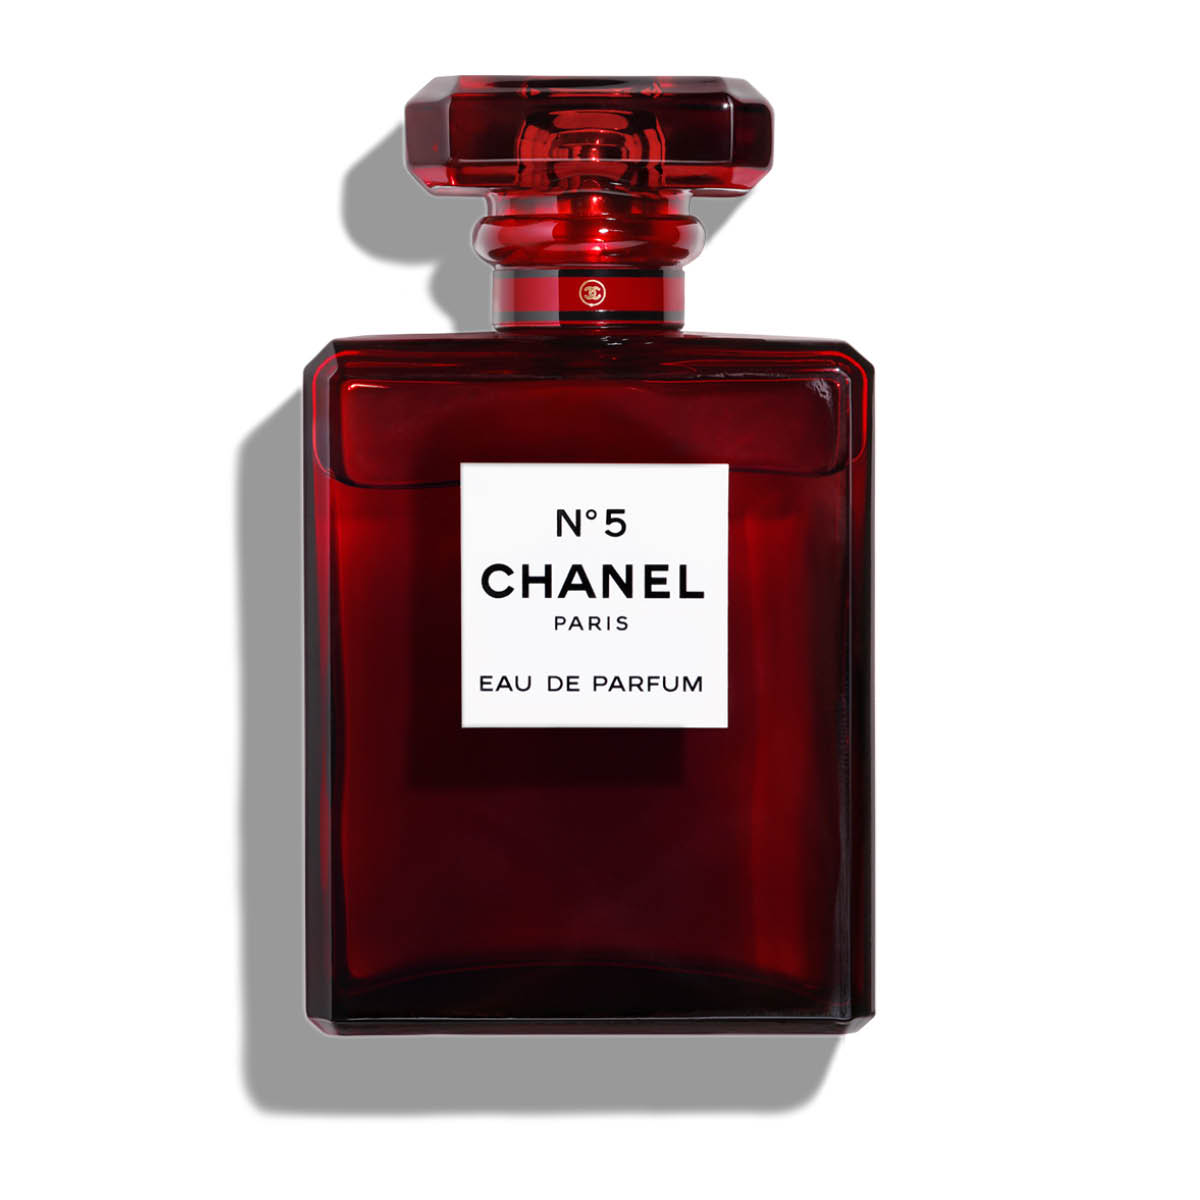 Buy Chanel Paris Blue RED N 5 Eau de Parfum - 100 ml Online In India